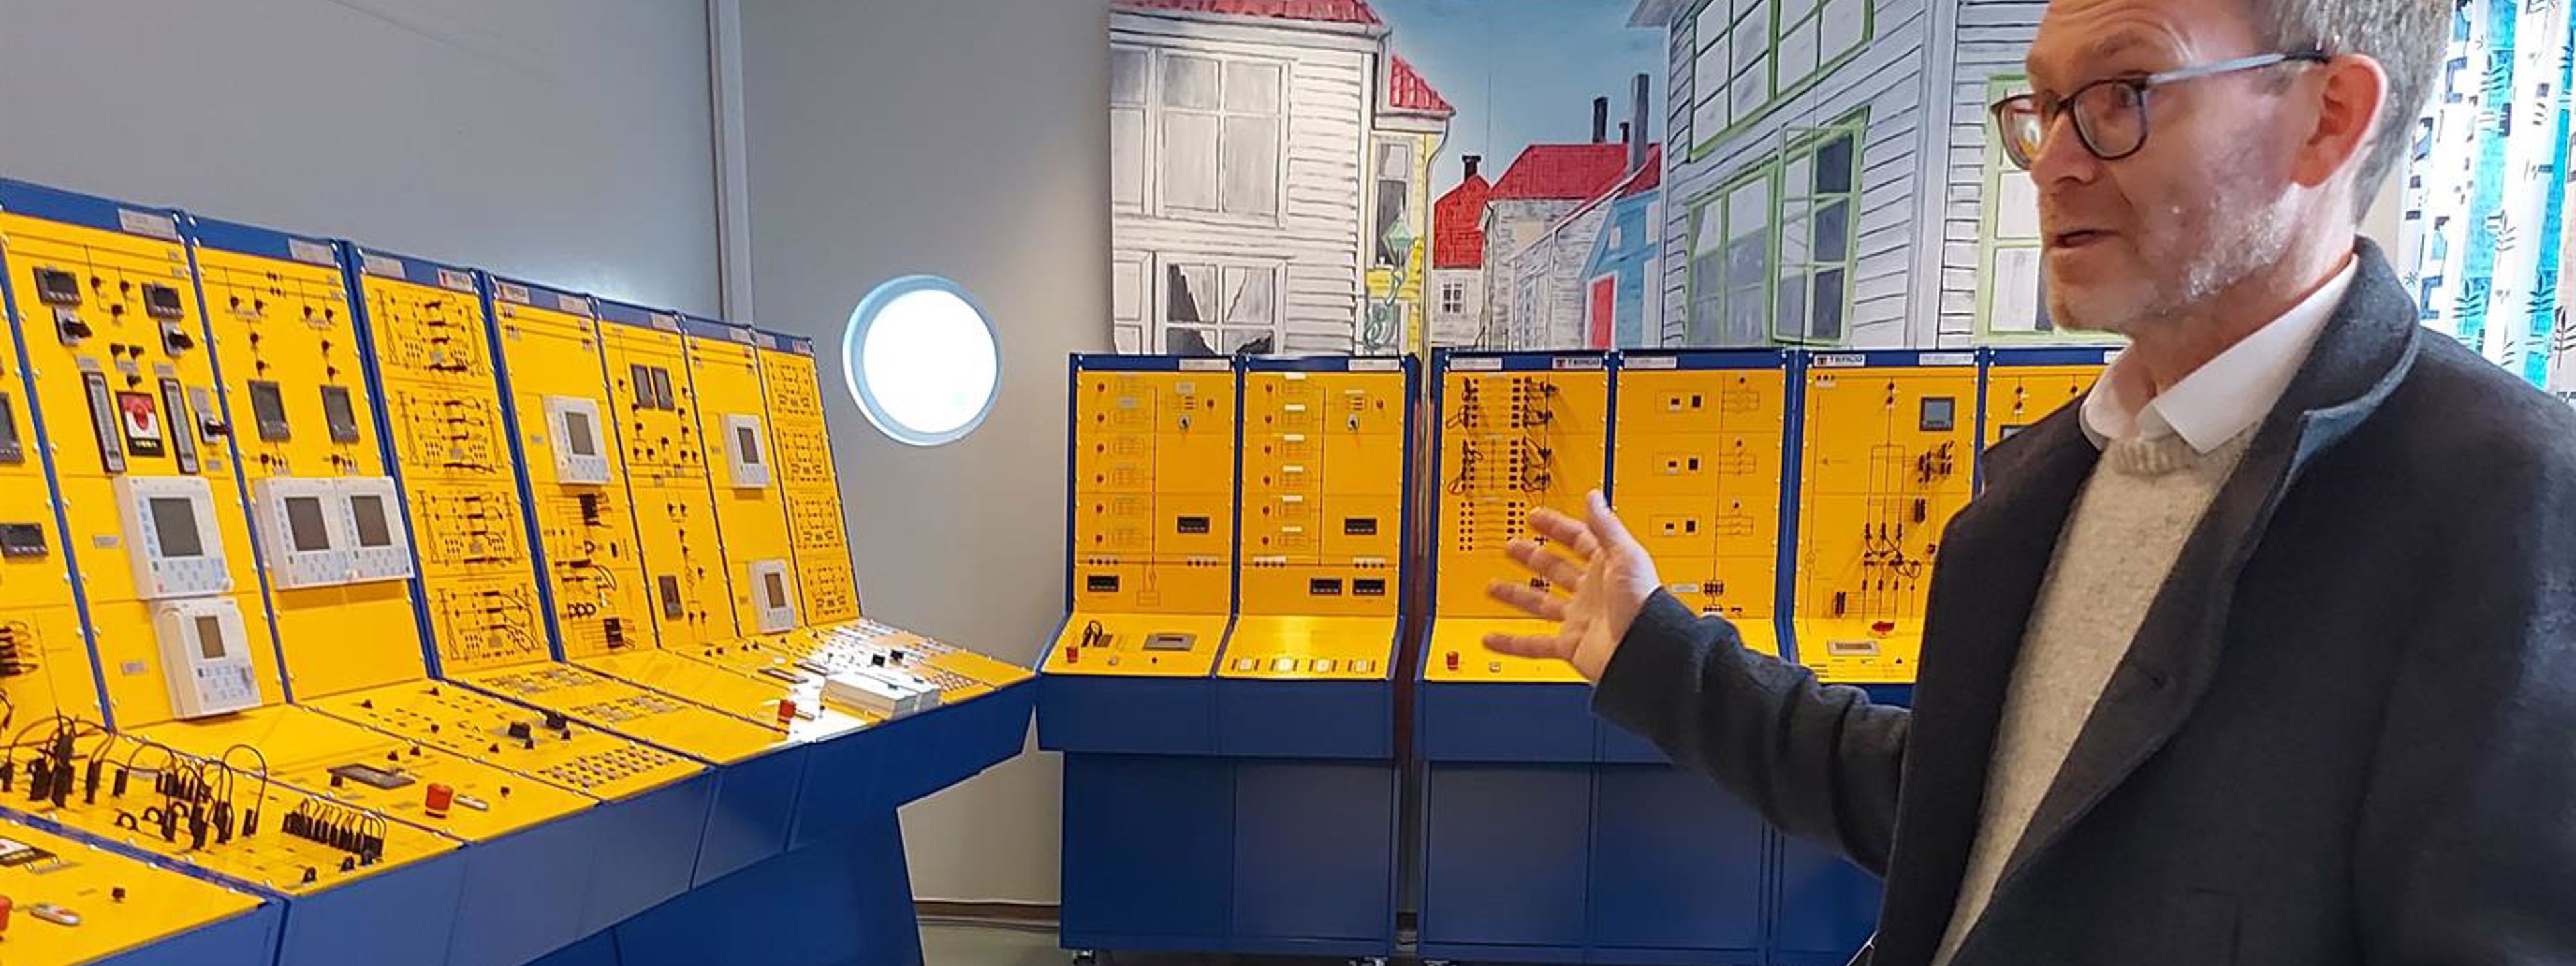 Statsekretær Hoel er imponert over de moderne laboratoriene Fagskolen i Hordaland disponerer. På kraftproduksjonslaboratoriet fikk han se hvordan en simulator for elektrisk kraftproduksjon fungerer.